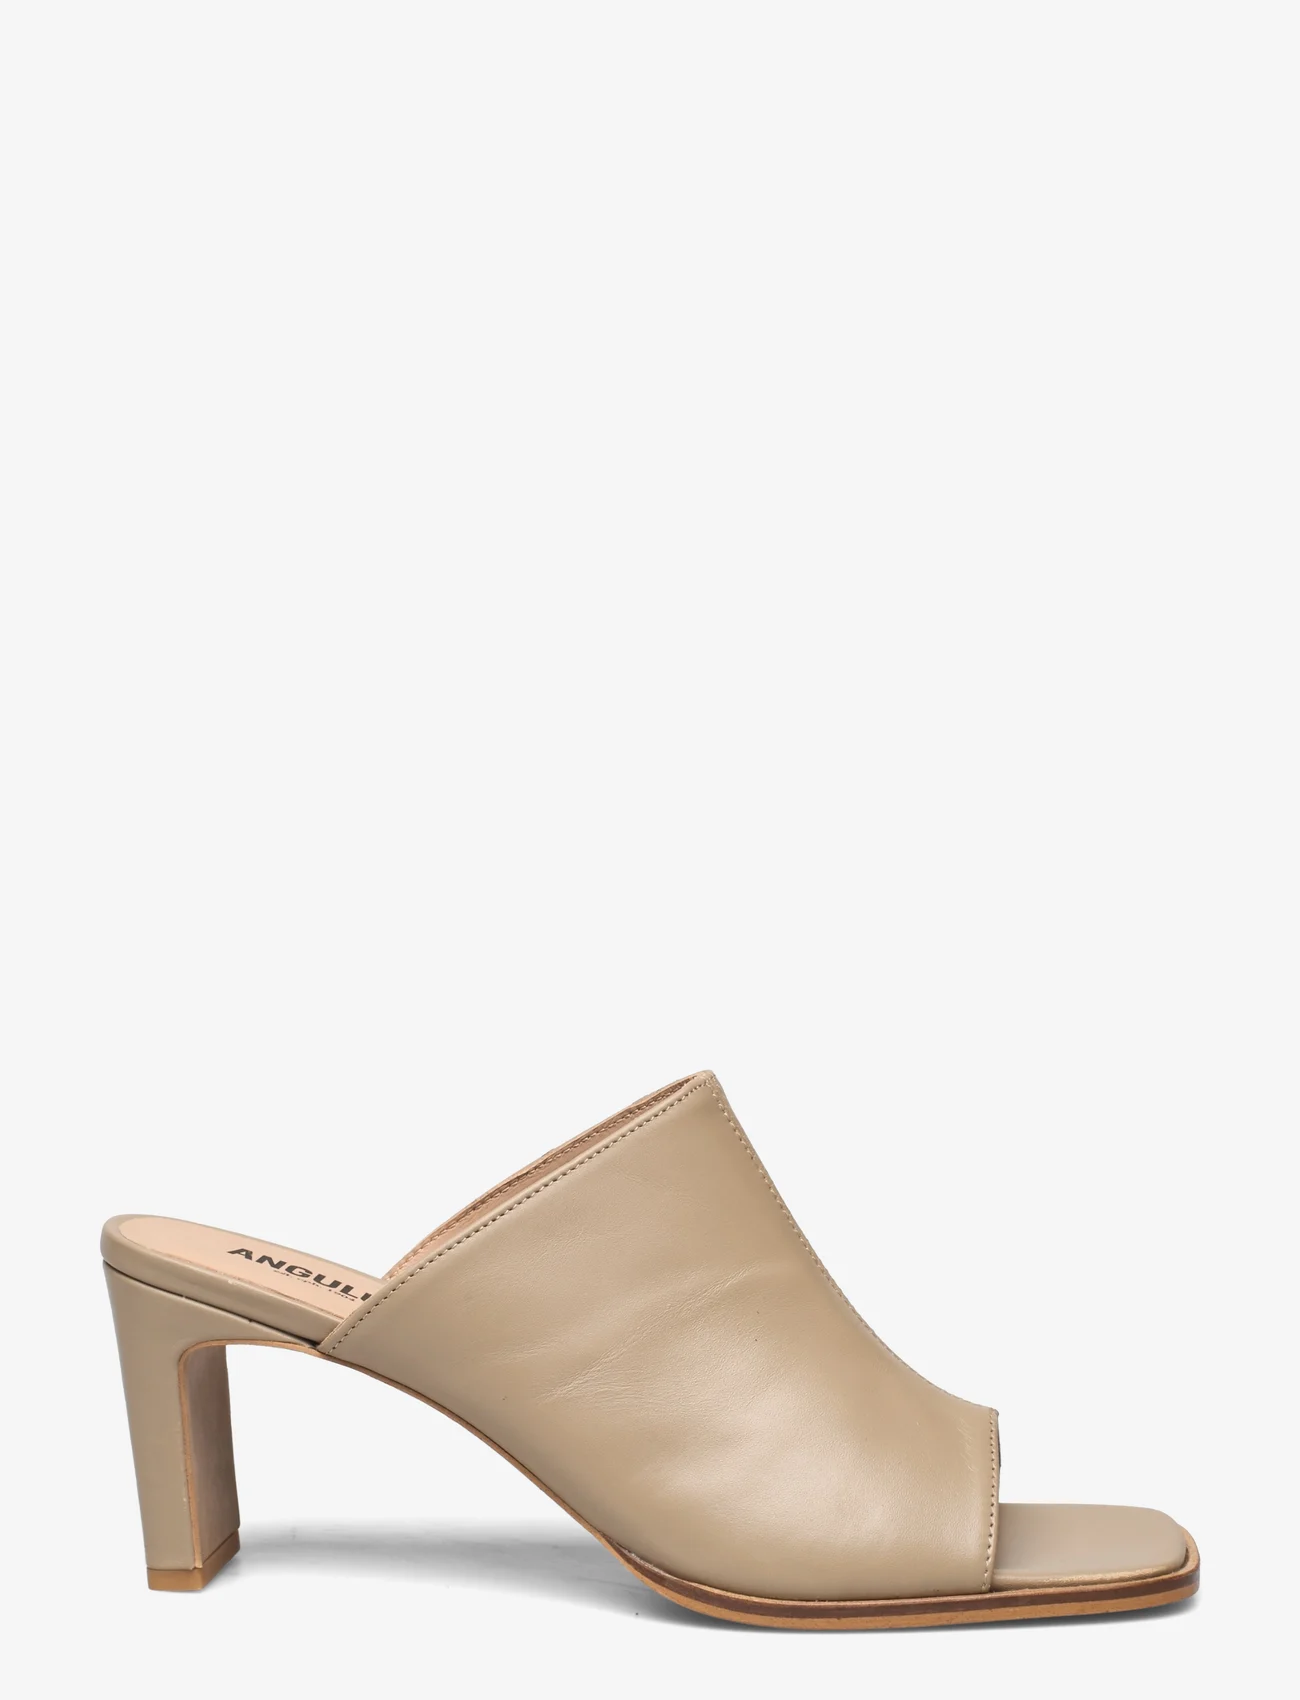 ANGULUS - Sandals - Block heels - heeled mules - 1571 beige - 1